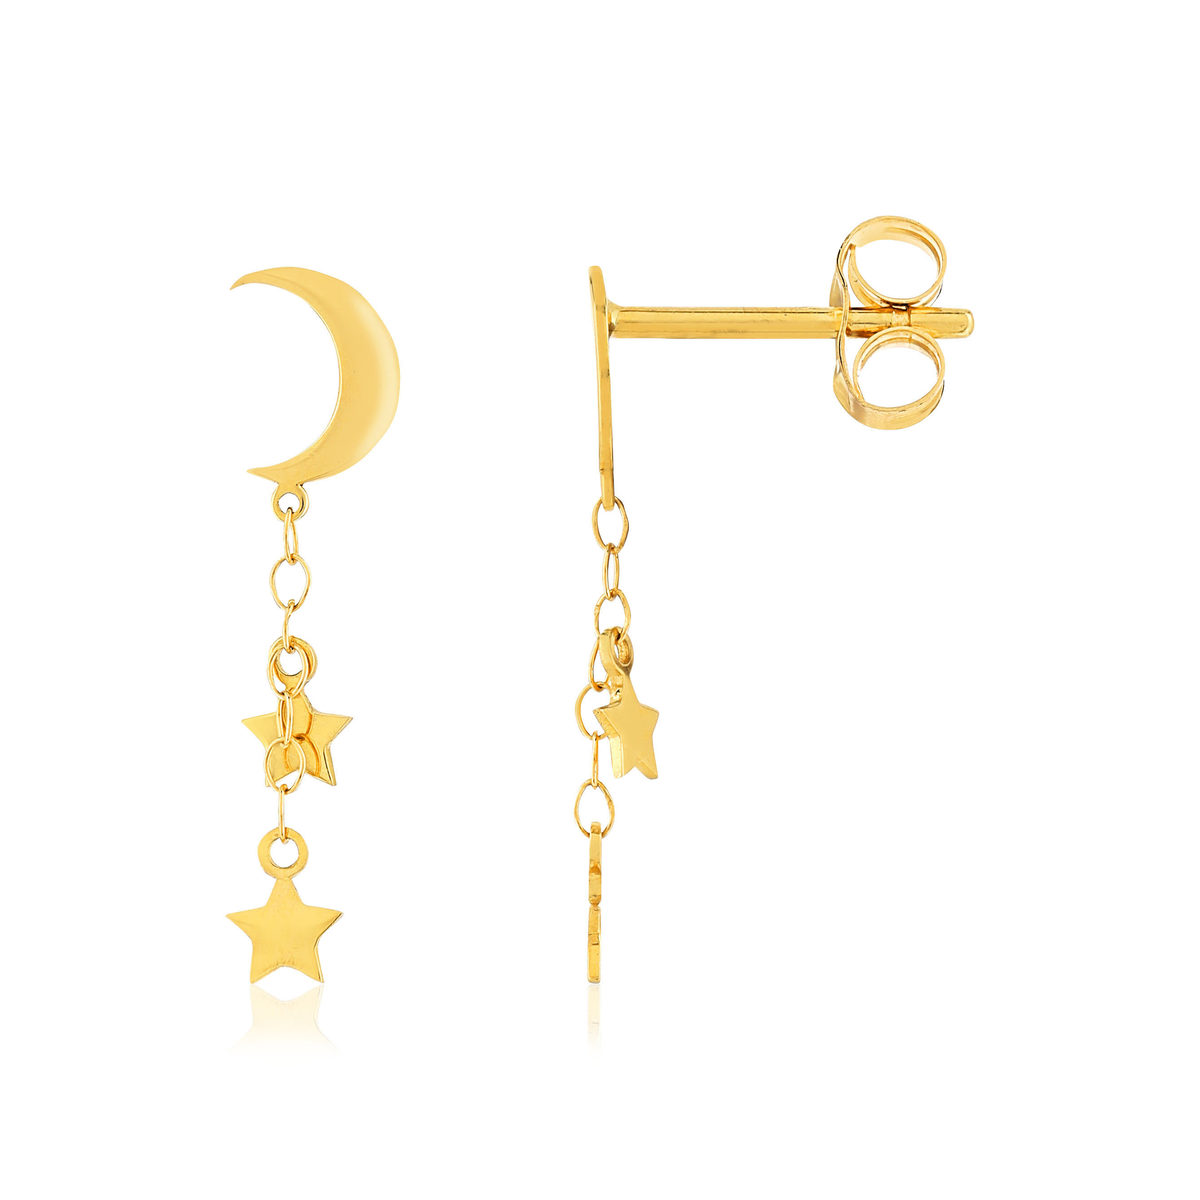 Boucles d'oreilles or jaune 750 motif lunes et étoiles